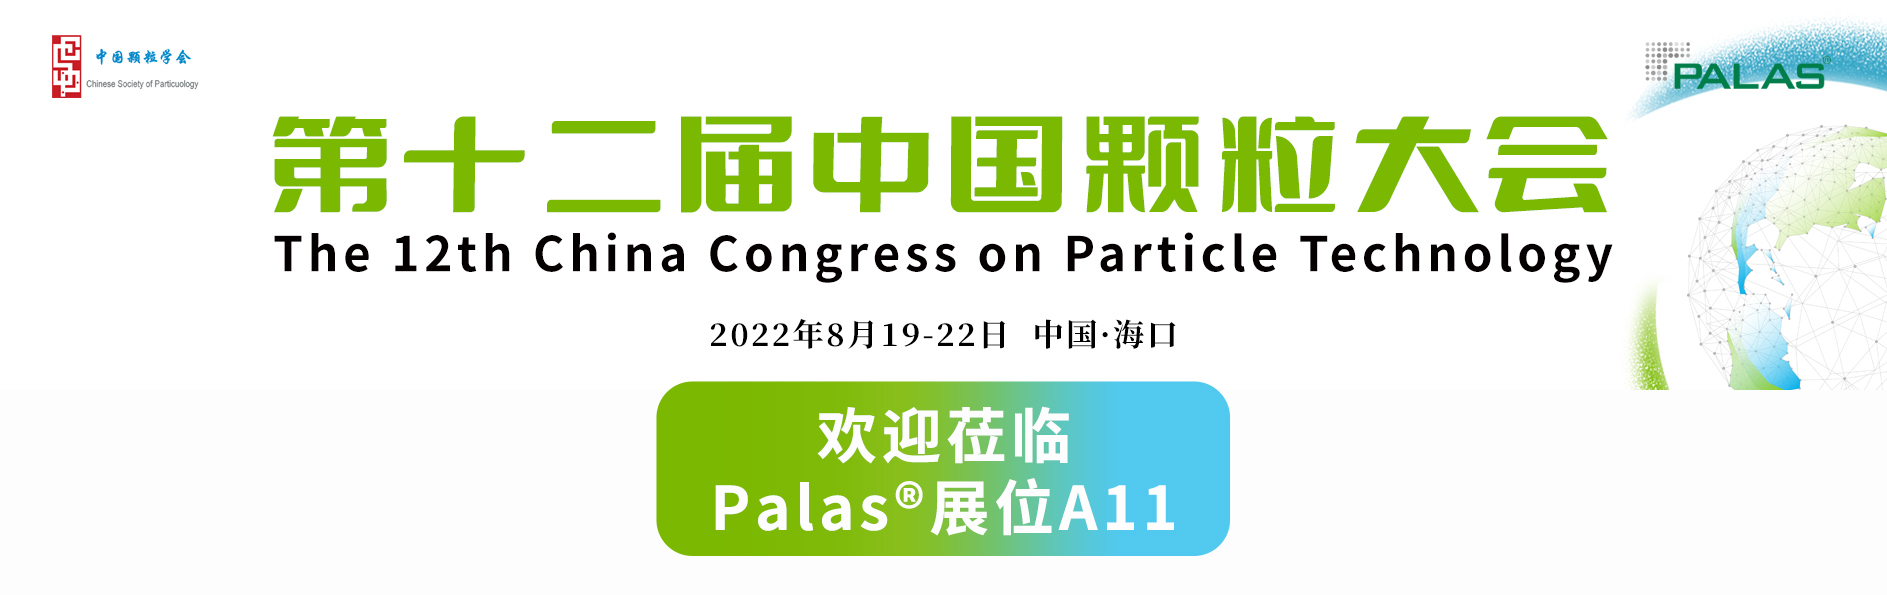 德国气溶胶测量专家Palas®诚邀您参加2022第十二届中国颗粒大会